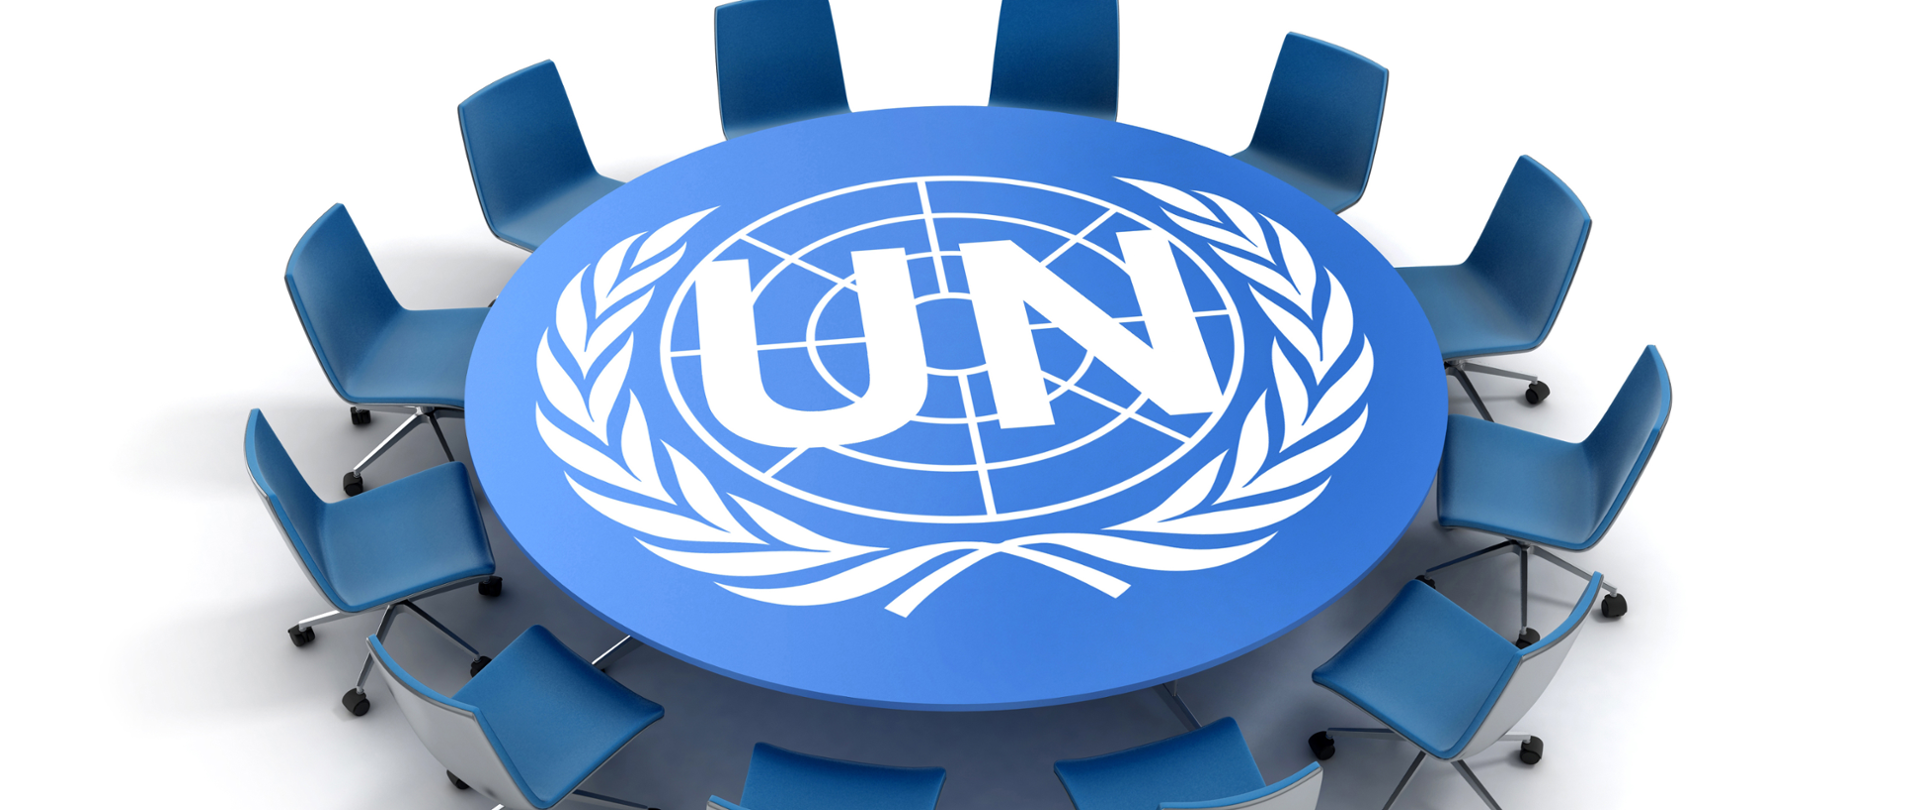 Stół z krzesłami i logo z napisem UN